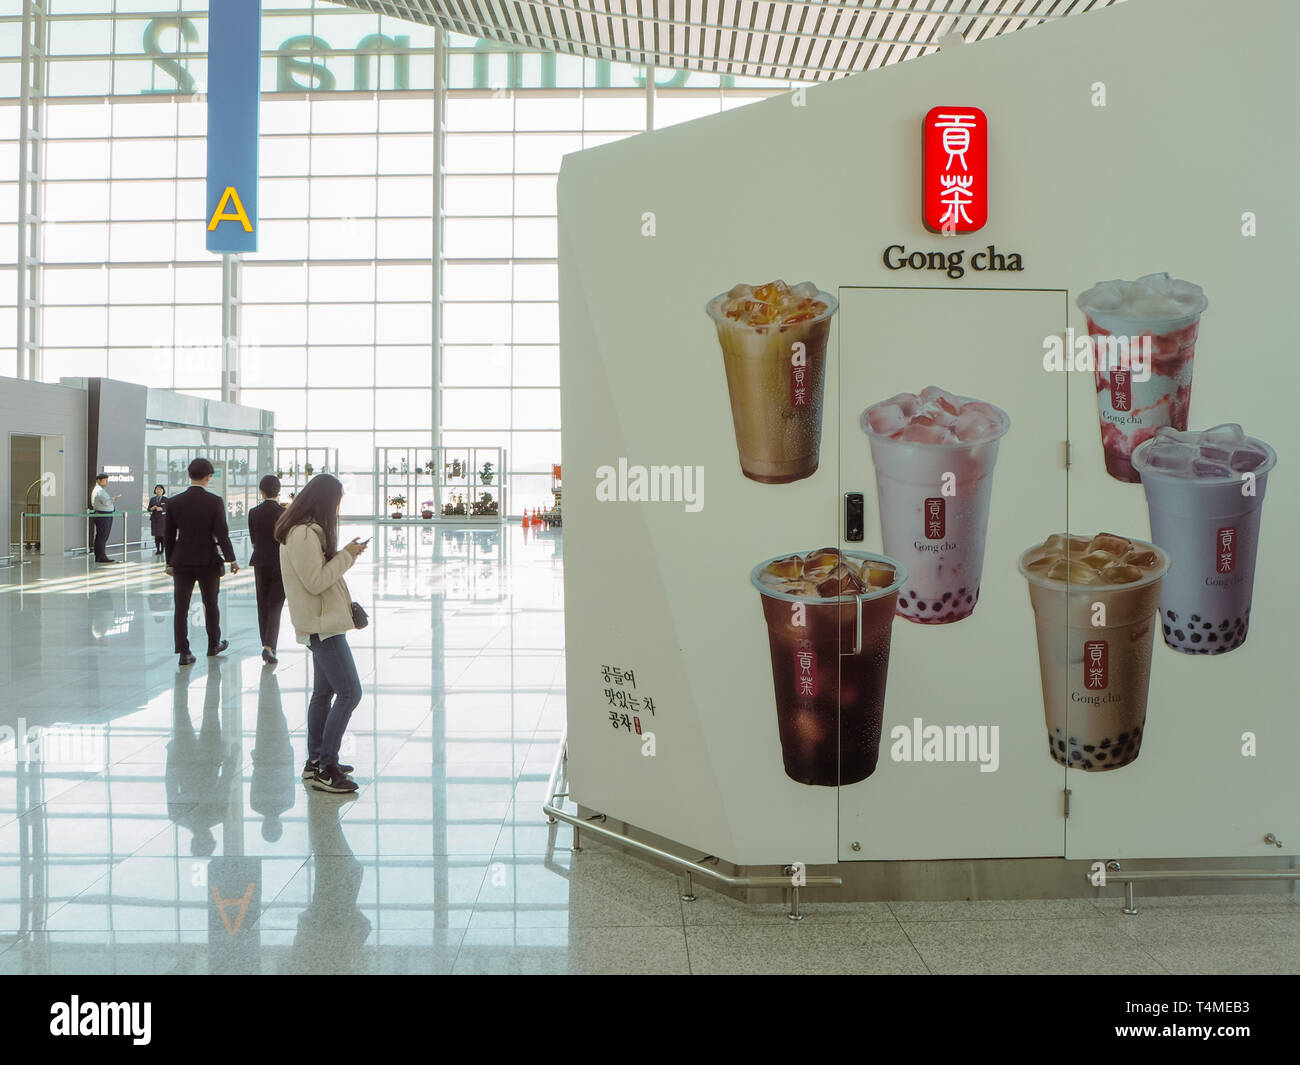 März 2019 - Südkorea: Store Front eines taiwanesischen Gong Cha Bubble Tea franchise Shop am Internationalen Flughafen Incheon Stockfoto